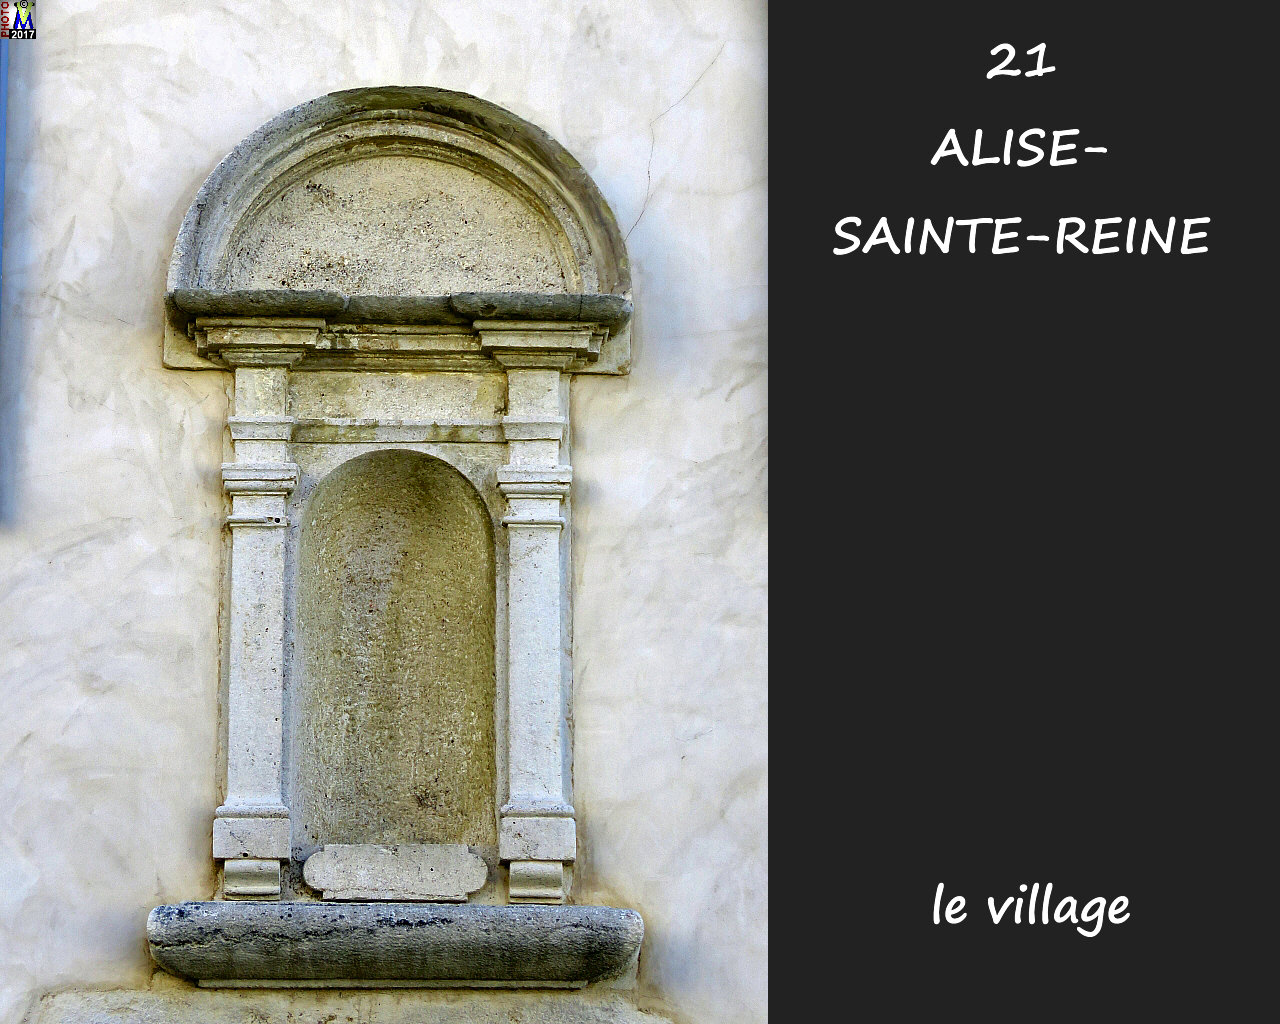 21ALISE-SAINTE-REINE_village_1020.jpg